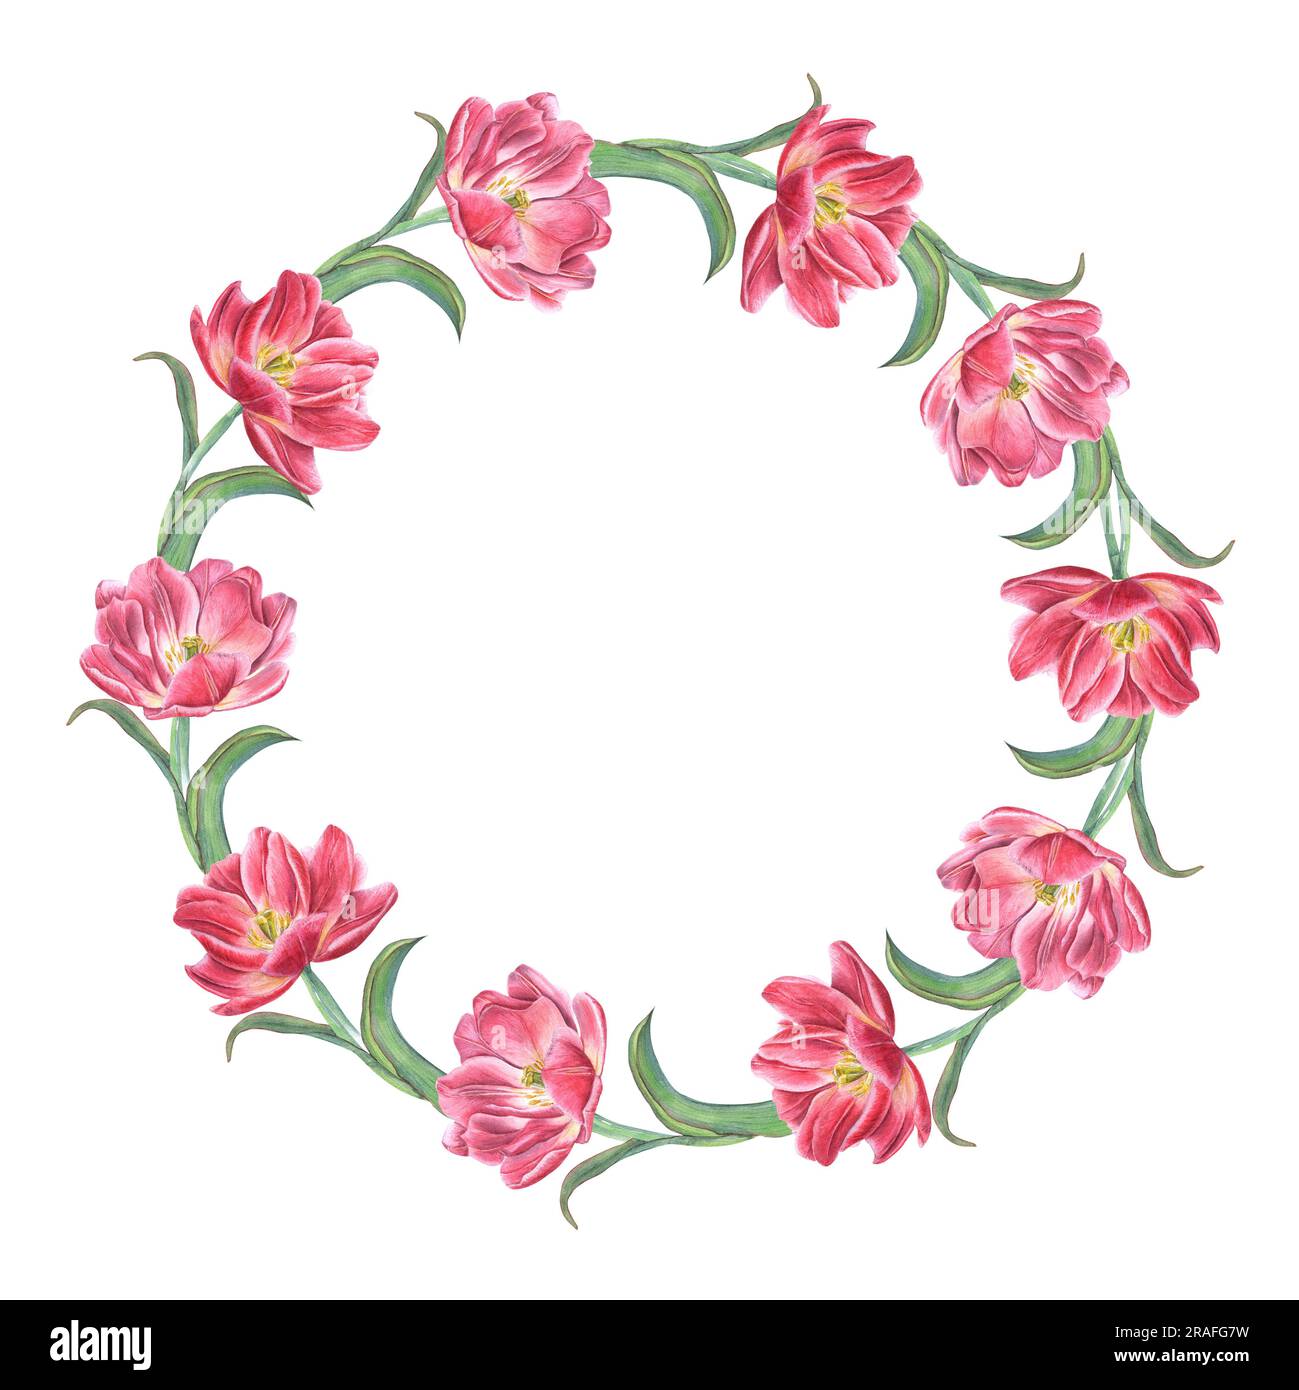 Rosa Tulpenkranz isoliert auf weißem Hintergrund. Aquarelle Darstellung von hellen Frühlingsblumen für Postkartendesign, Einladungsvorlage Stockfoto